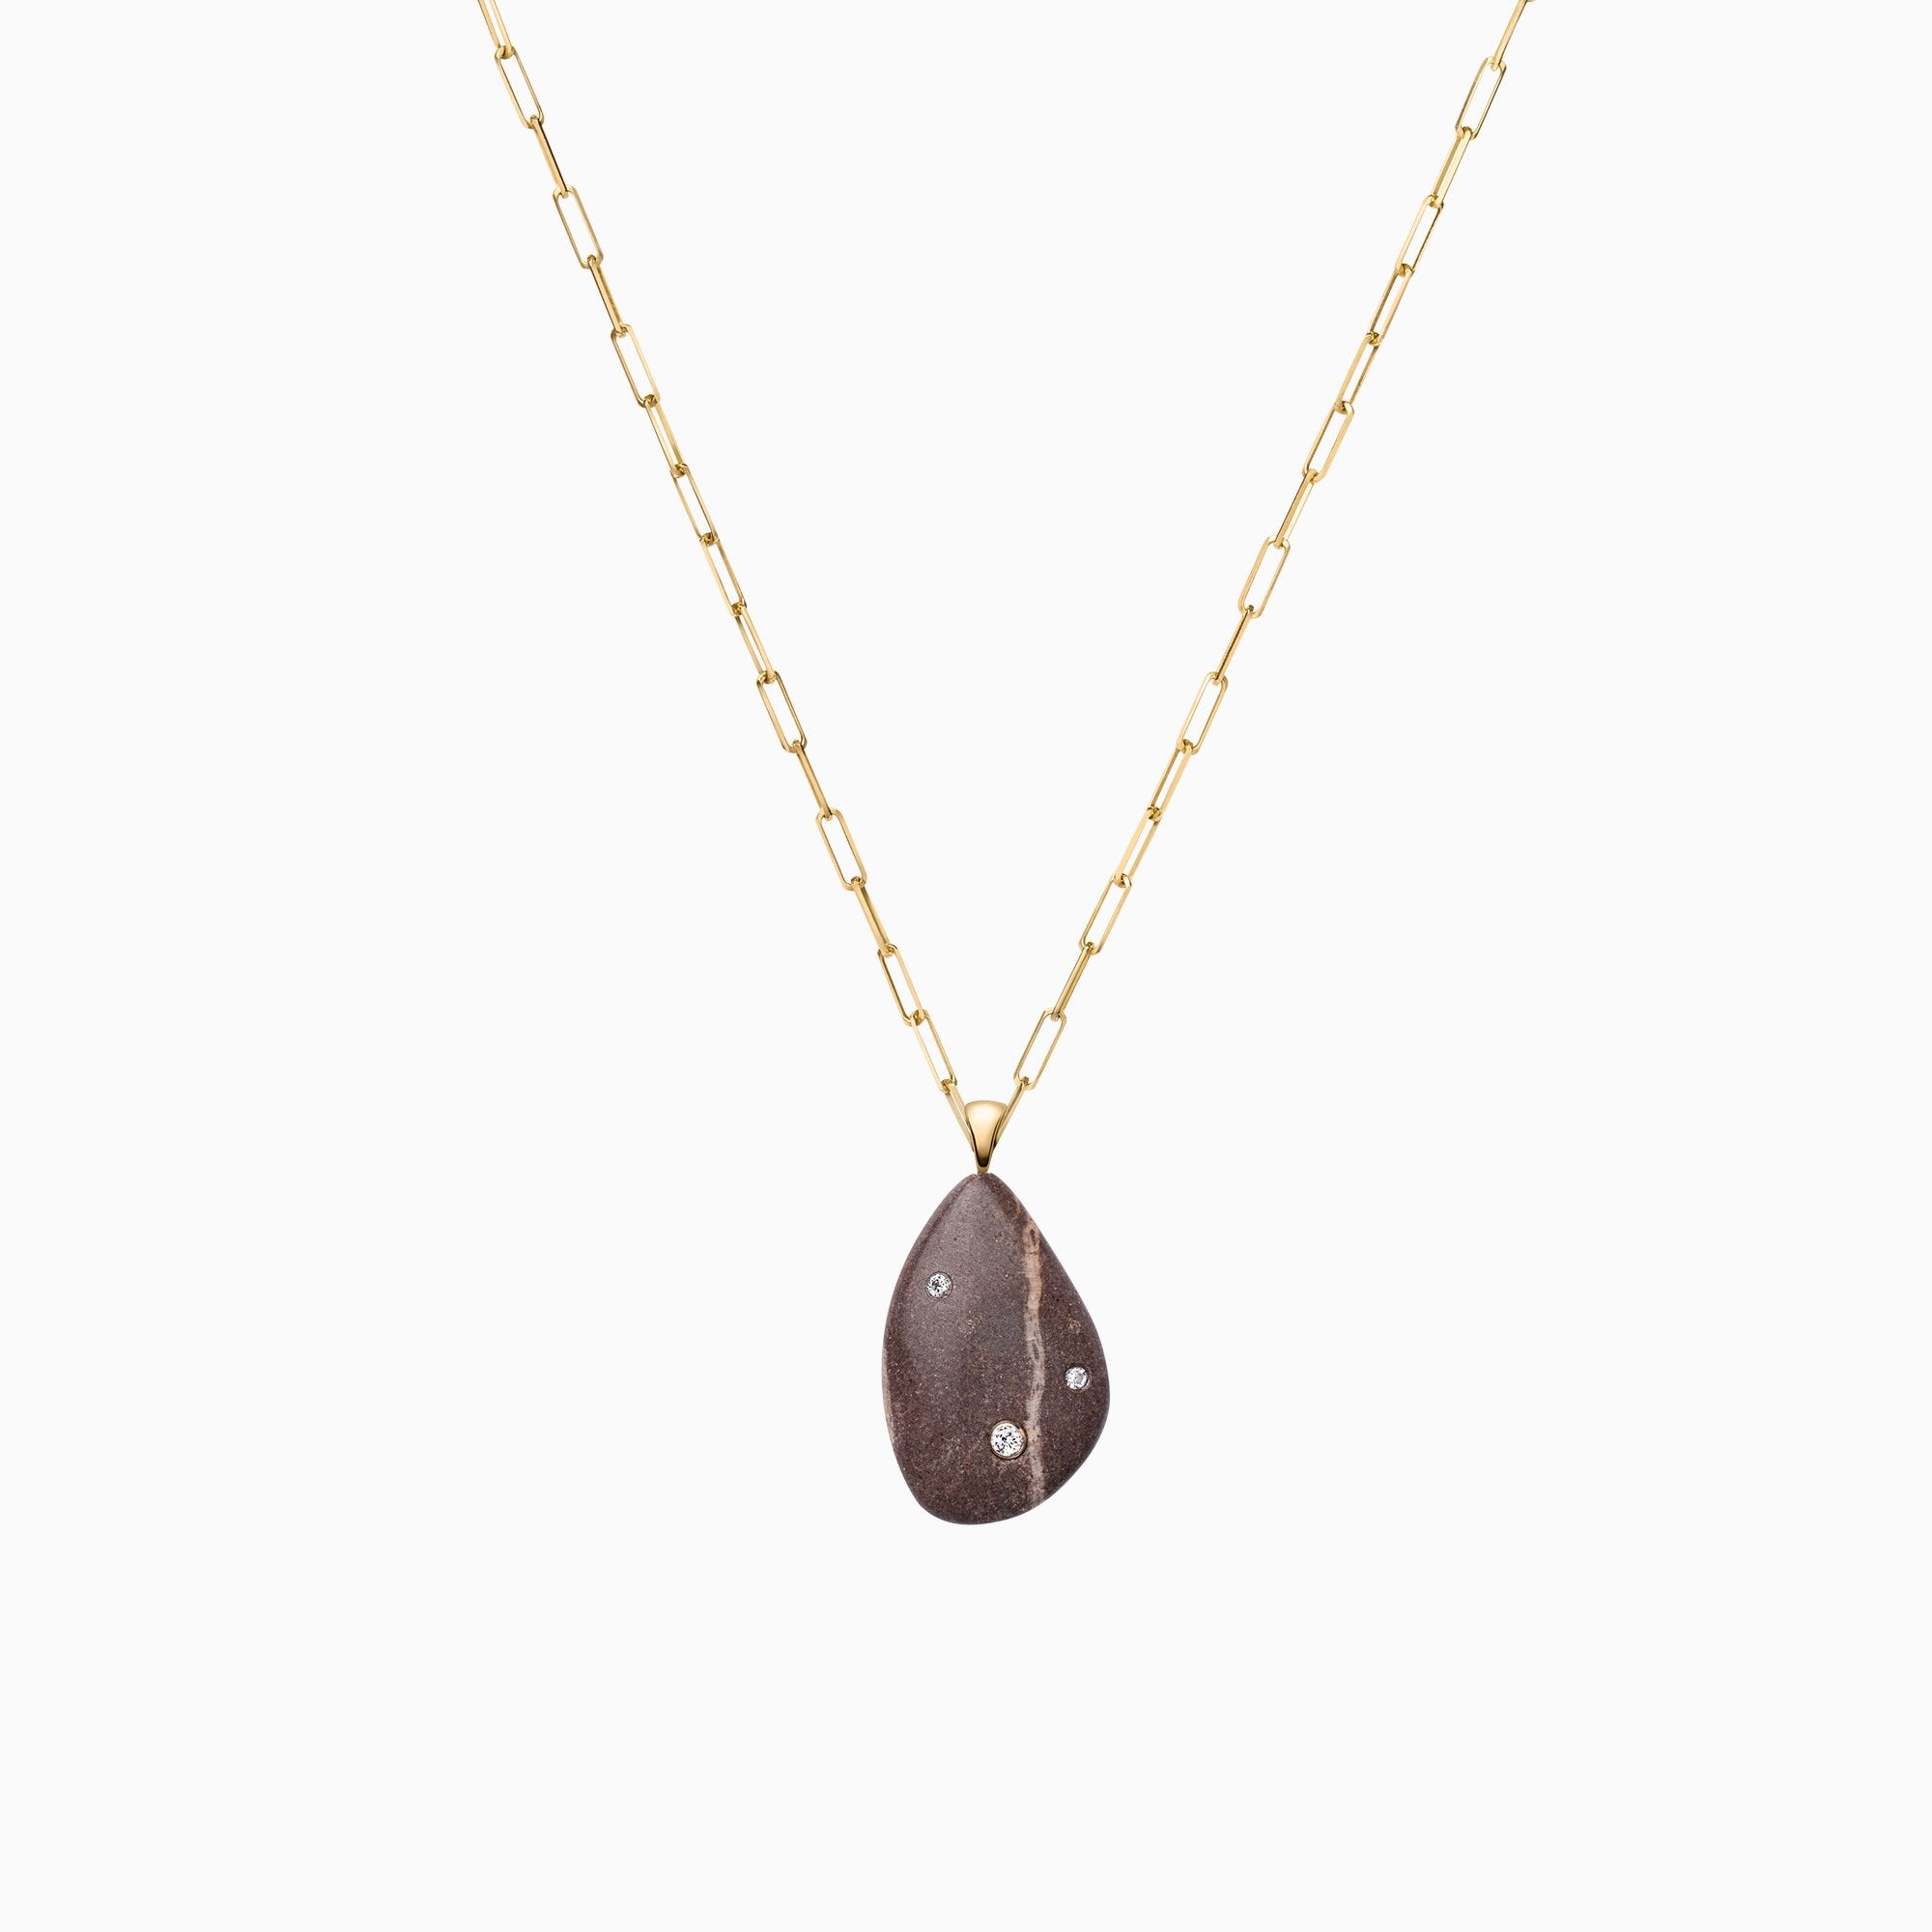 Nessa Designs Jewelry | Necklaces | Atlantic Pebble & Diamond Pendant